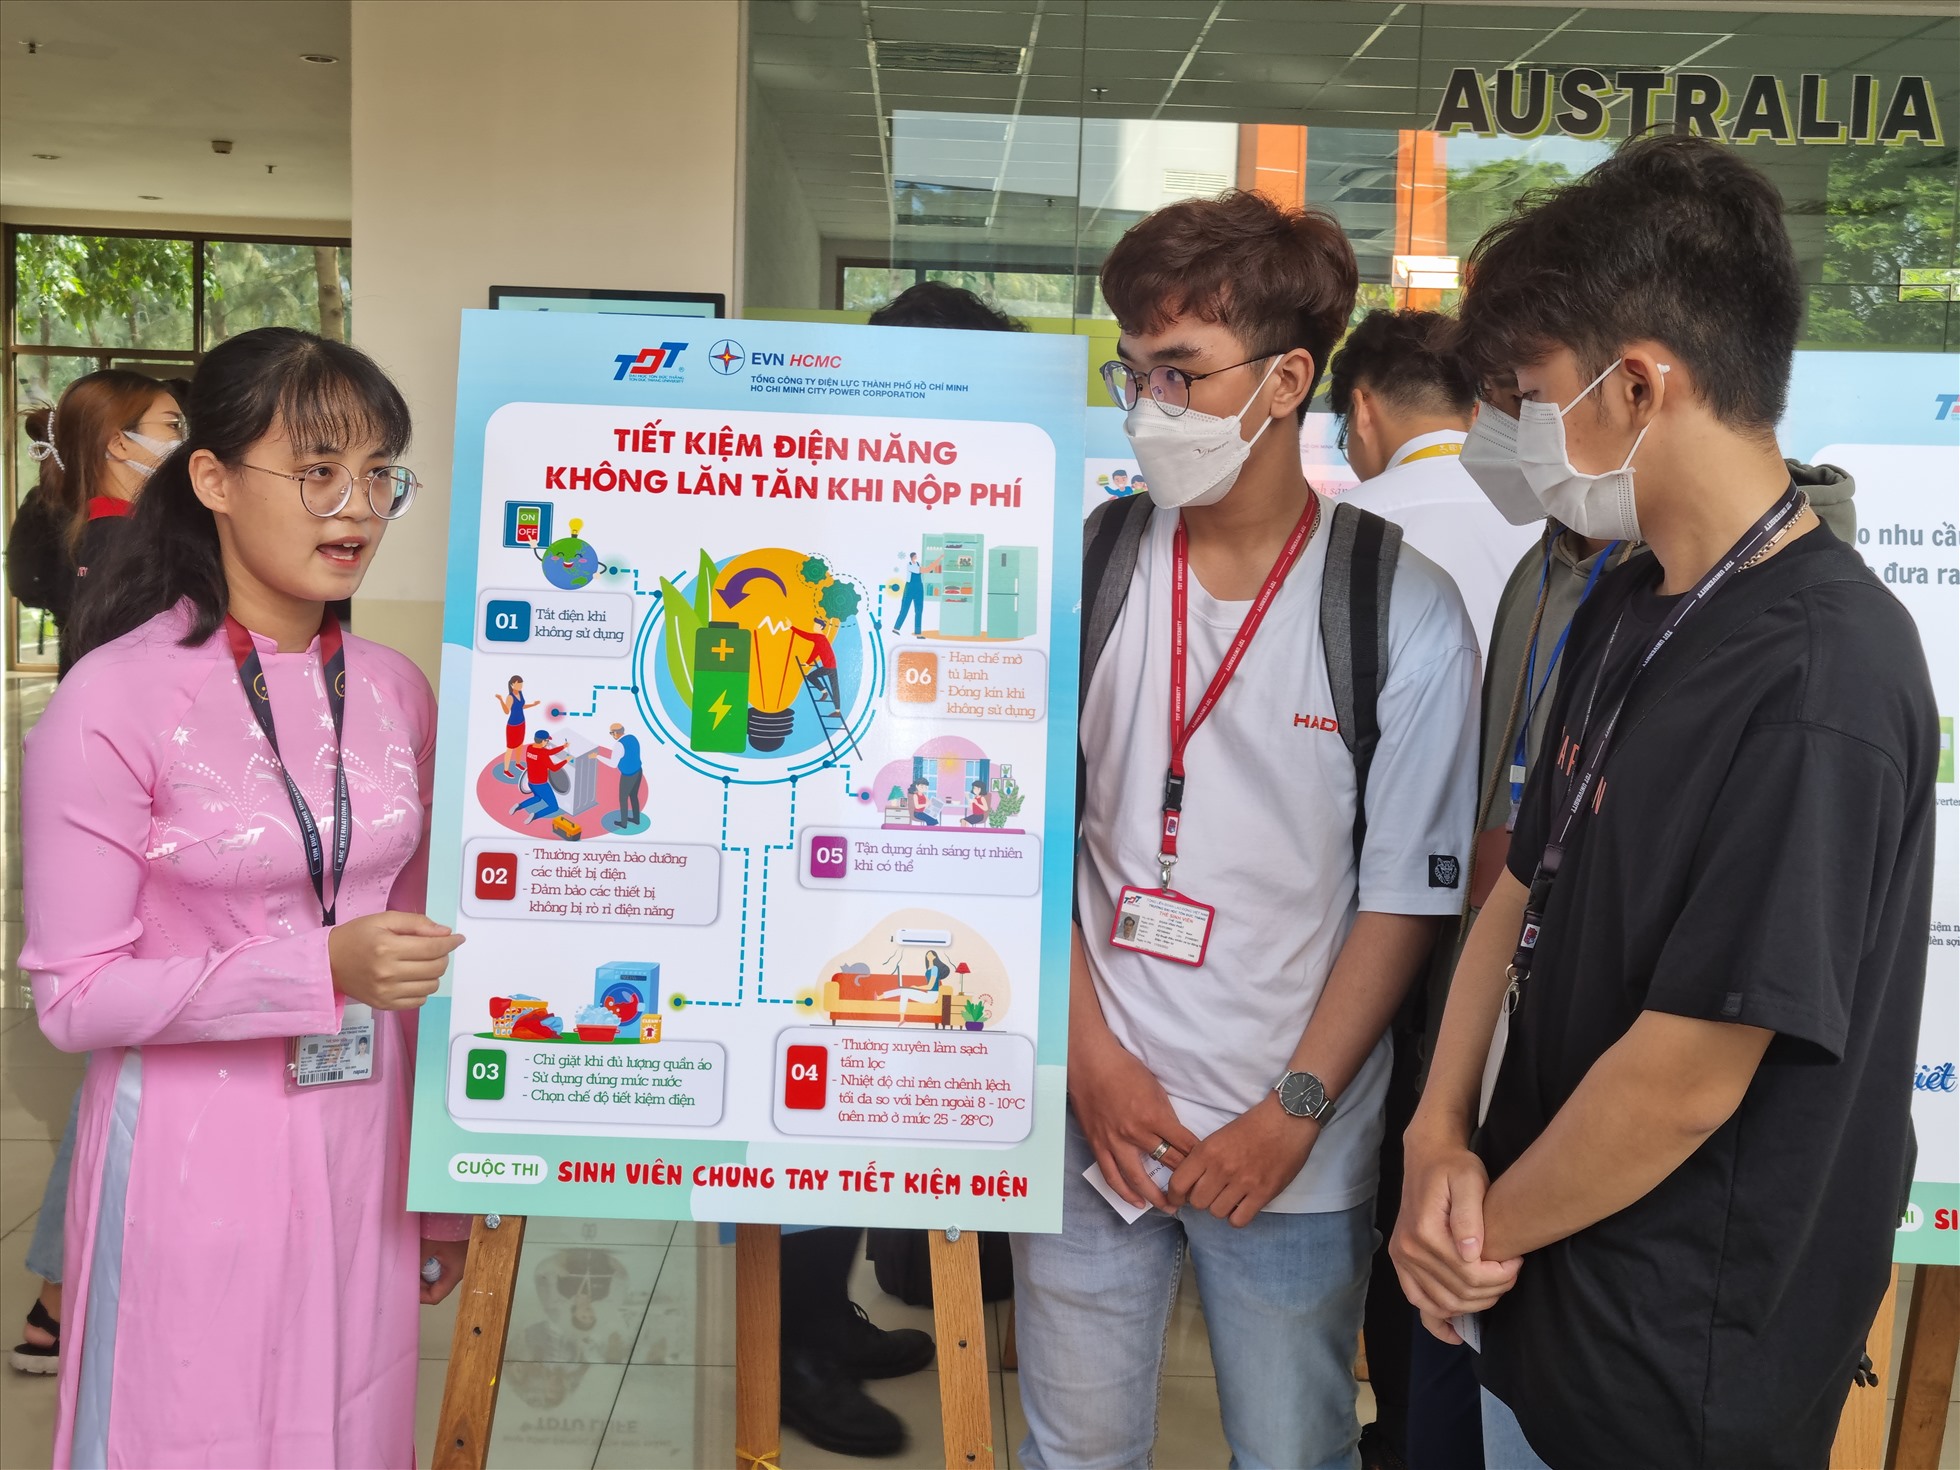 Sinh viên Trường Đại học Tôn Đức Thắng tuyên truyền về cuộc thi “Sinh viên chung tay tiết kiệm điện“. Ảnh: Nam Dương